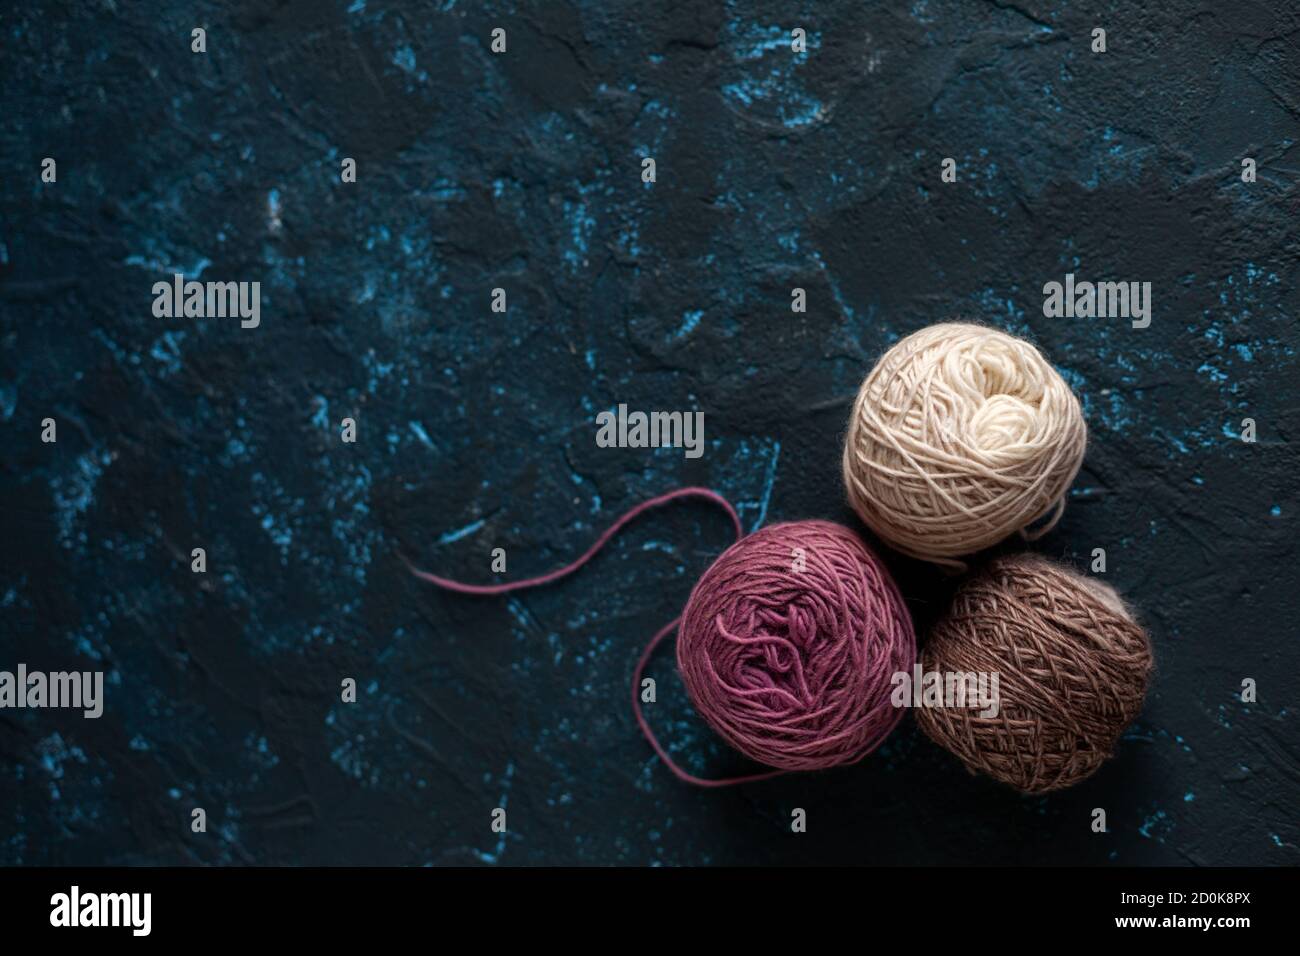 Trois boules de couleur beige rose brun pelote de fil de laine pour crochet et tricoter sur le béton de mastic bleu foncé. Mettre à plat l'image avec de l'espace pour le texte. Banque D'Images